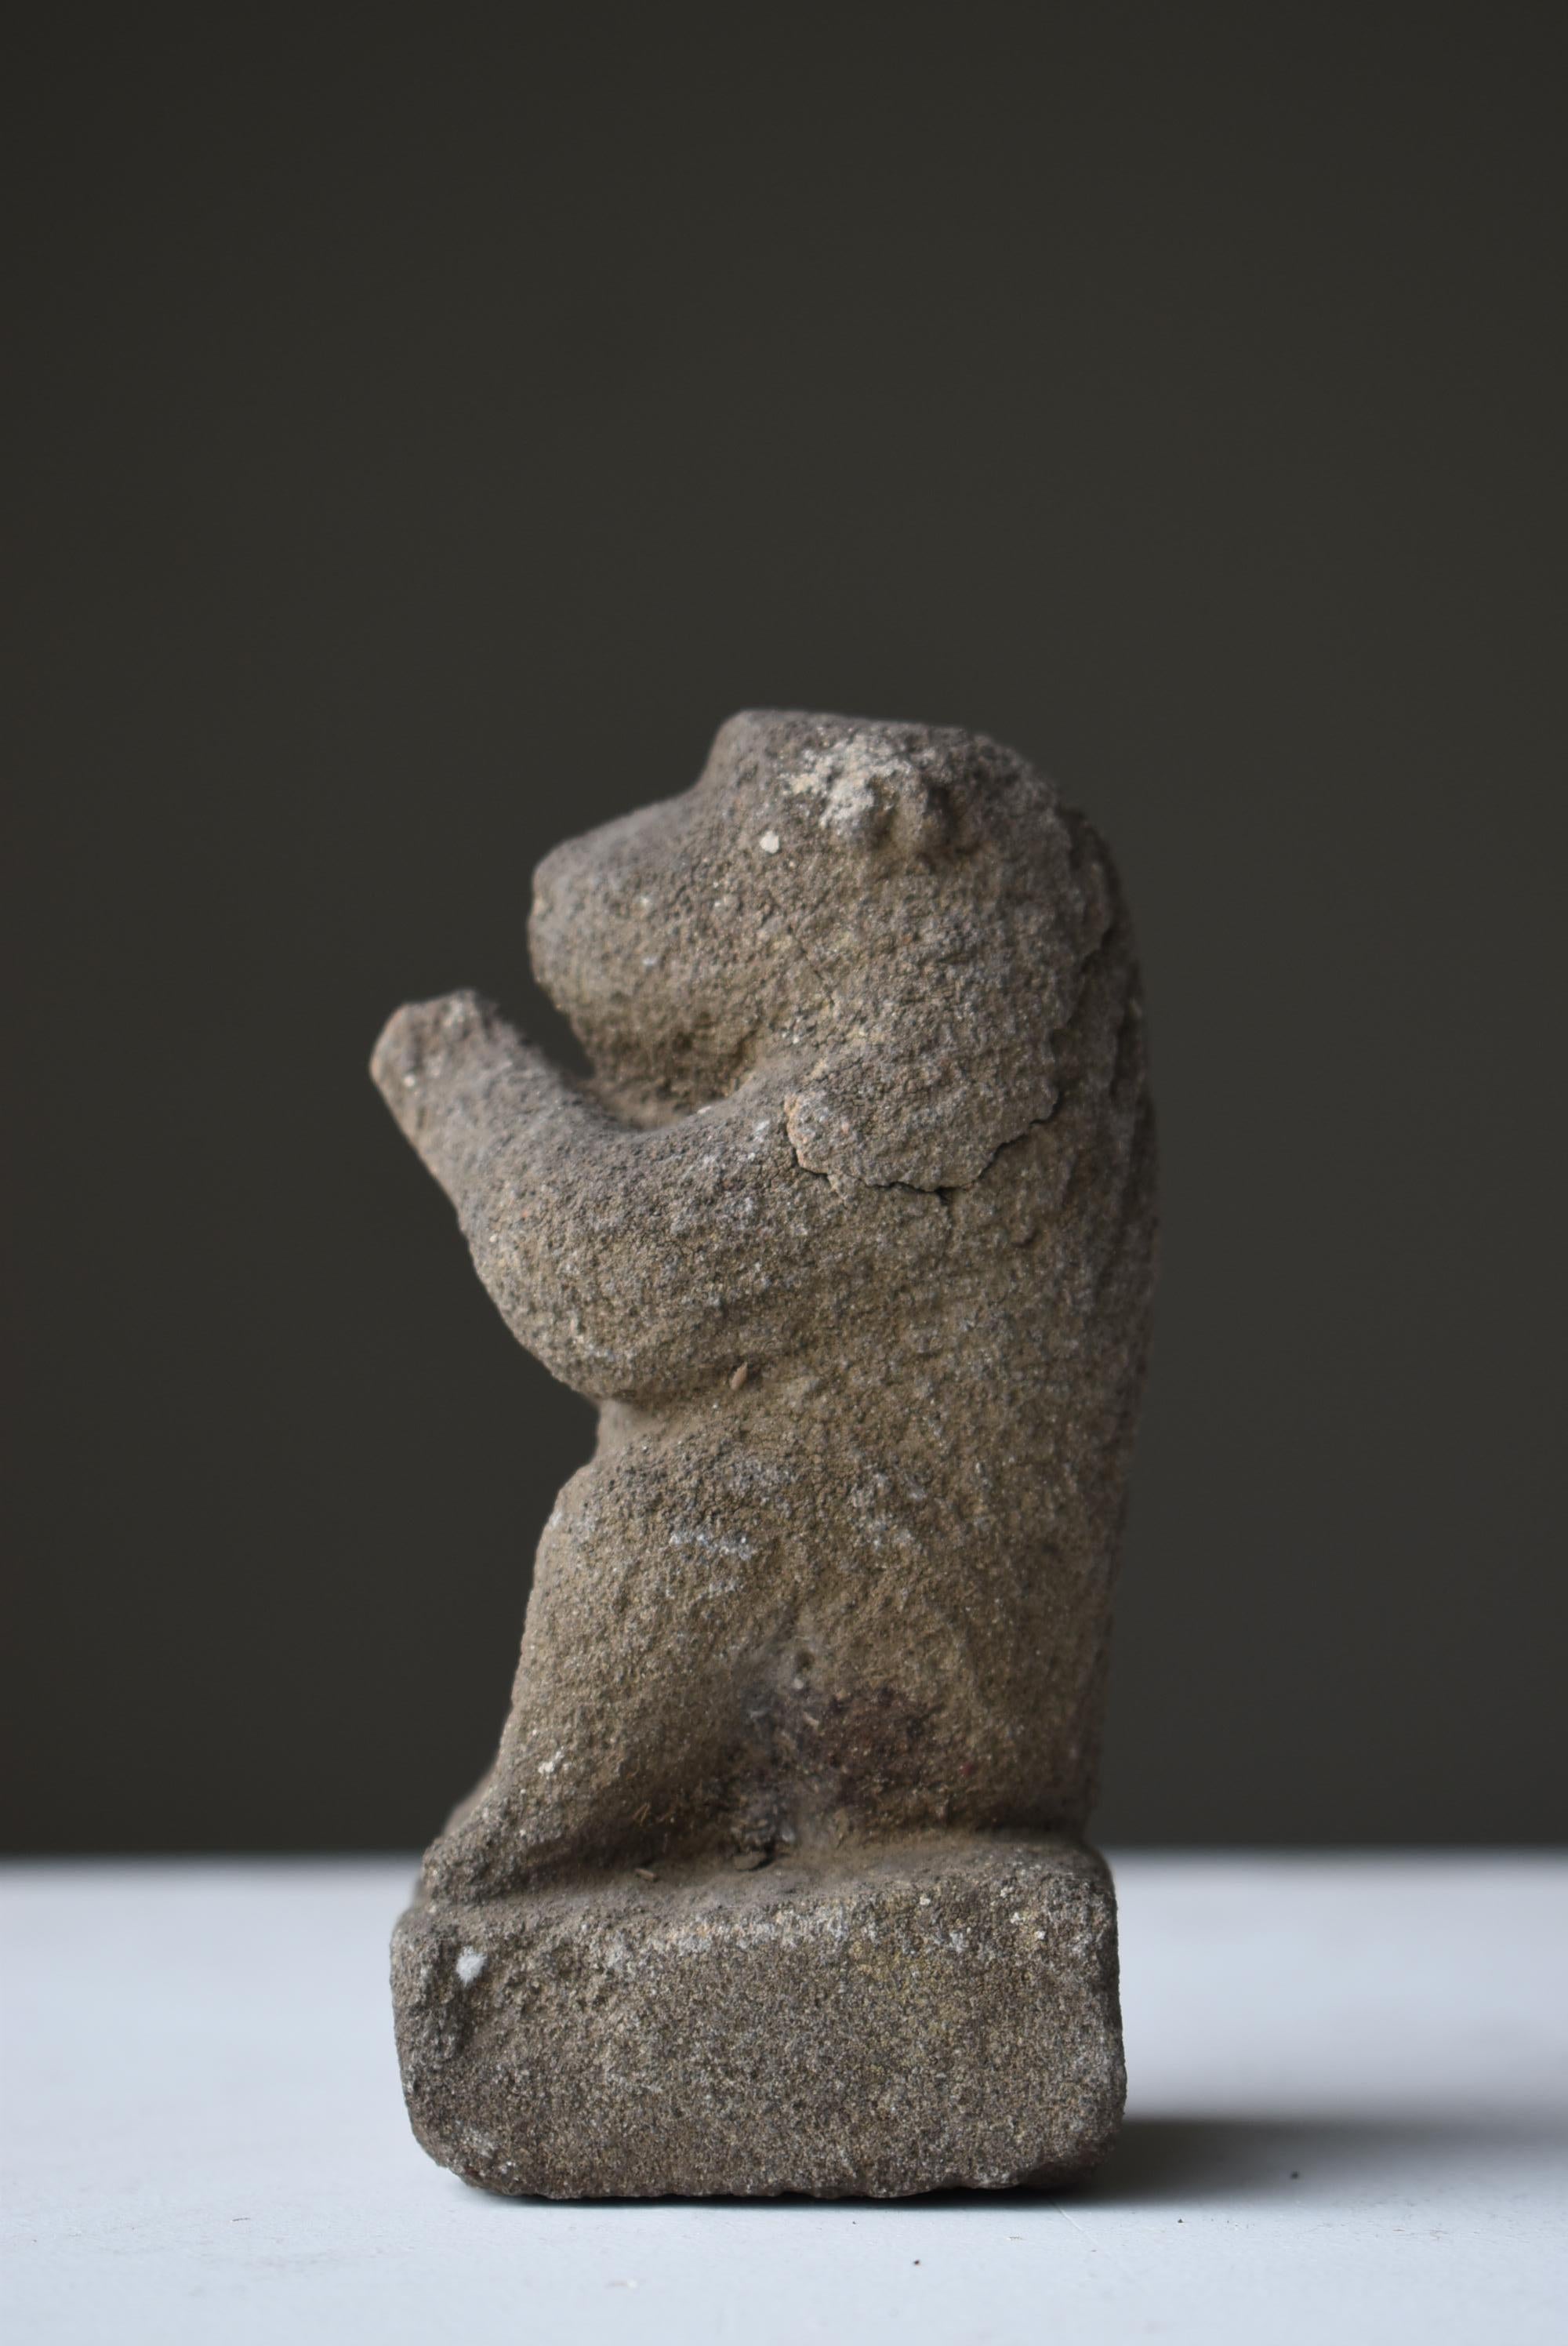 Japanese Antique Stone Craving Monkey 1800s-1860s / Buddhist Art Object Wabisabi 1